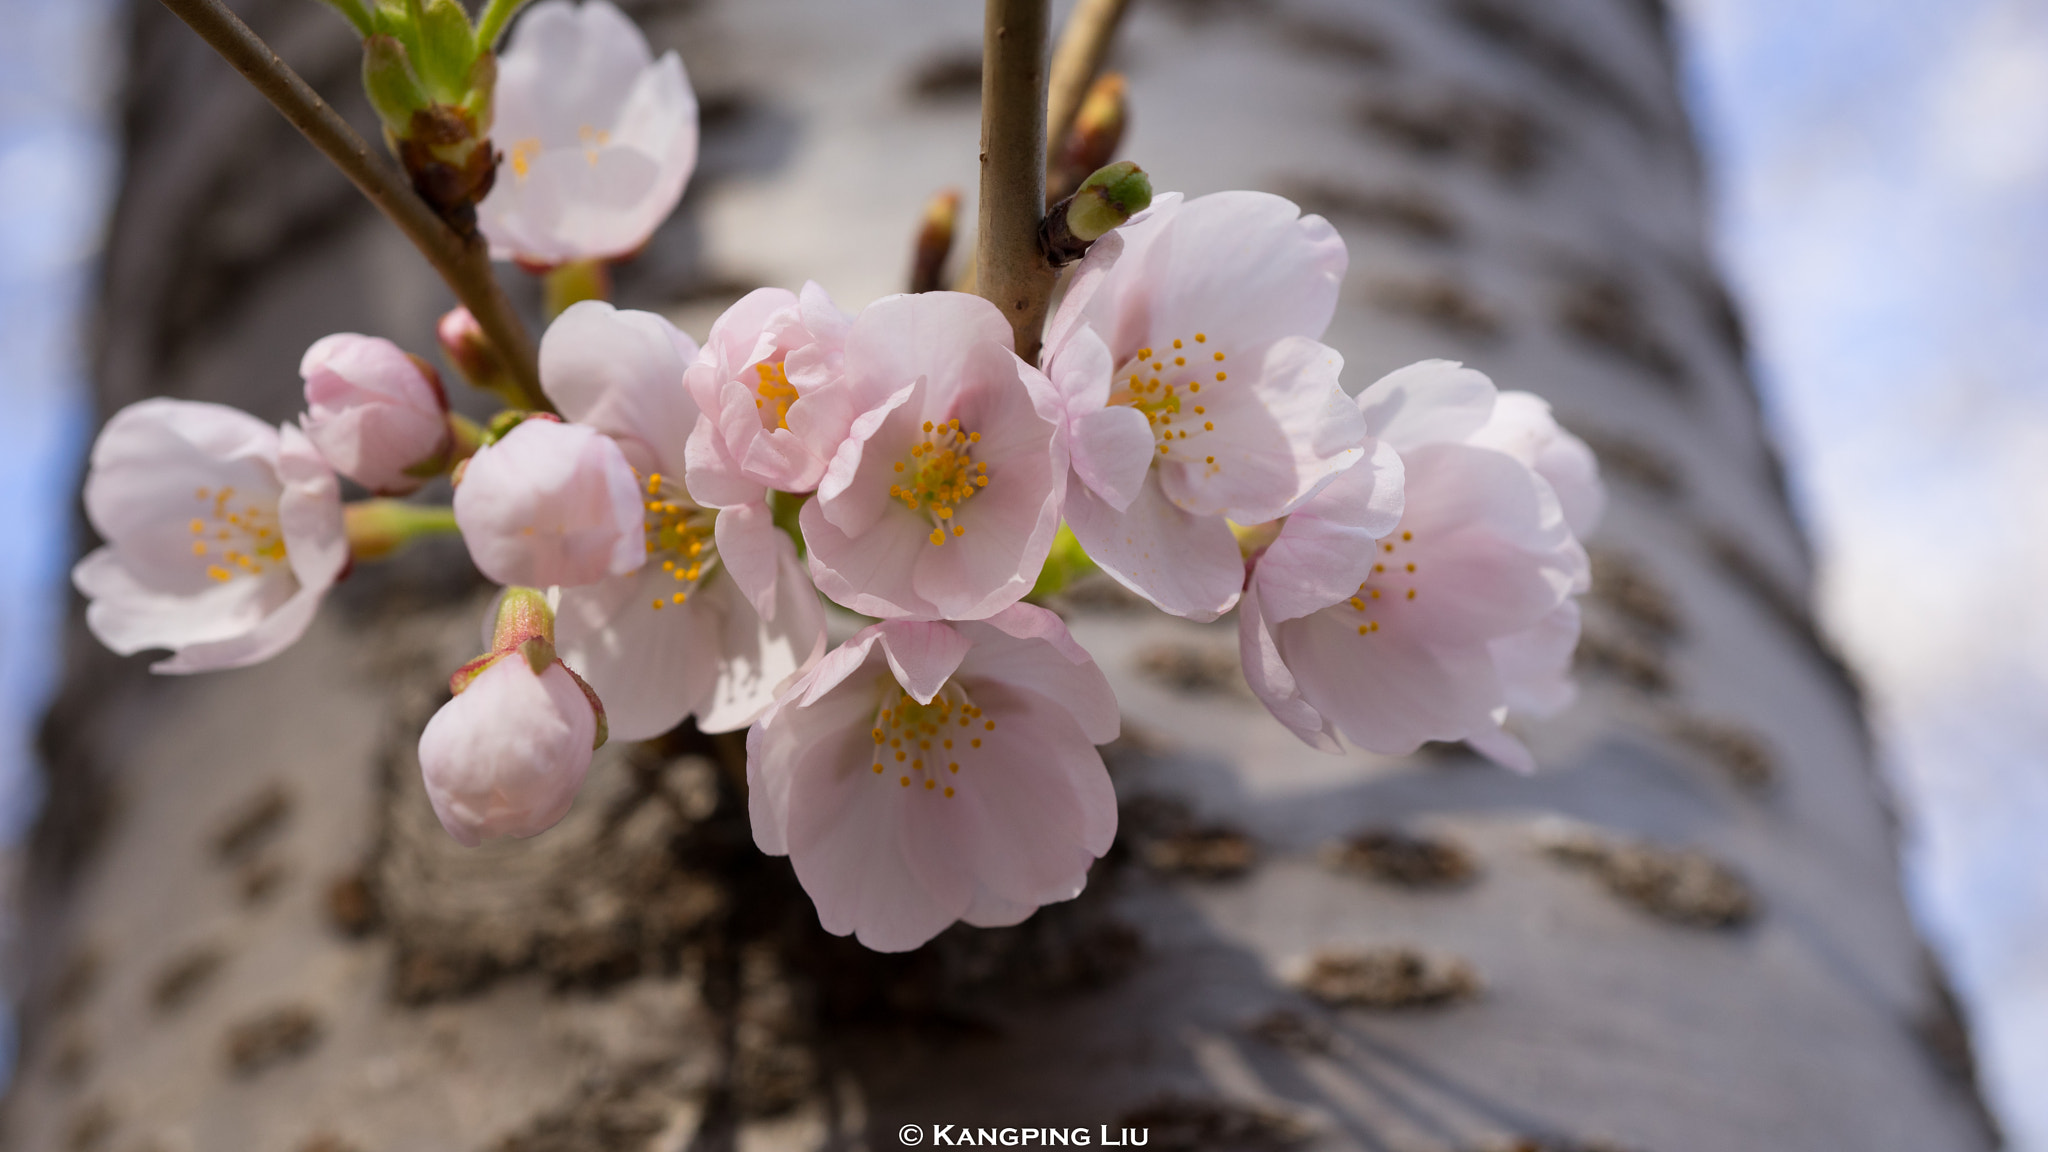 Sony a7 + Sony FE 50mm F2.8 Macro sample photo. Cherry blossom #3 photography